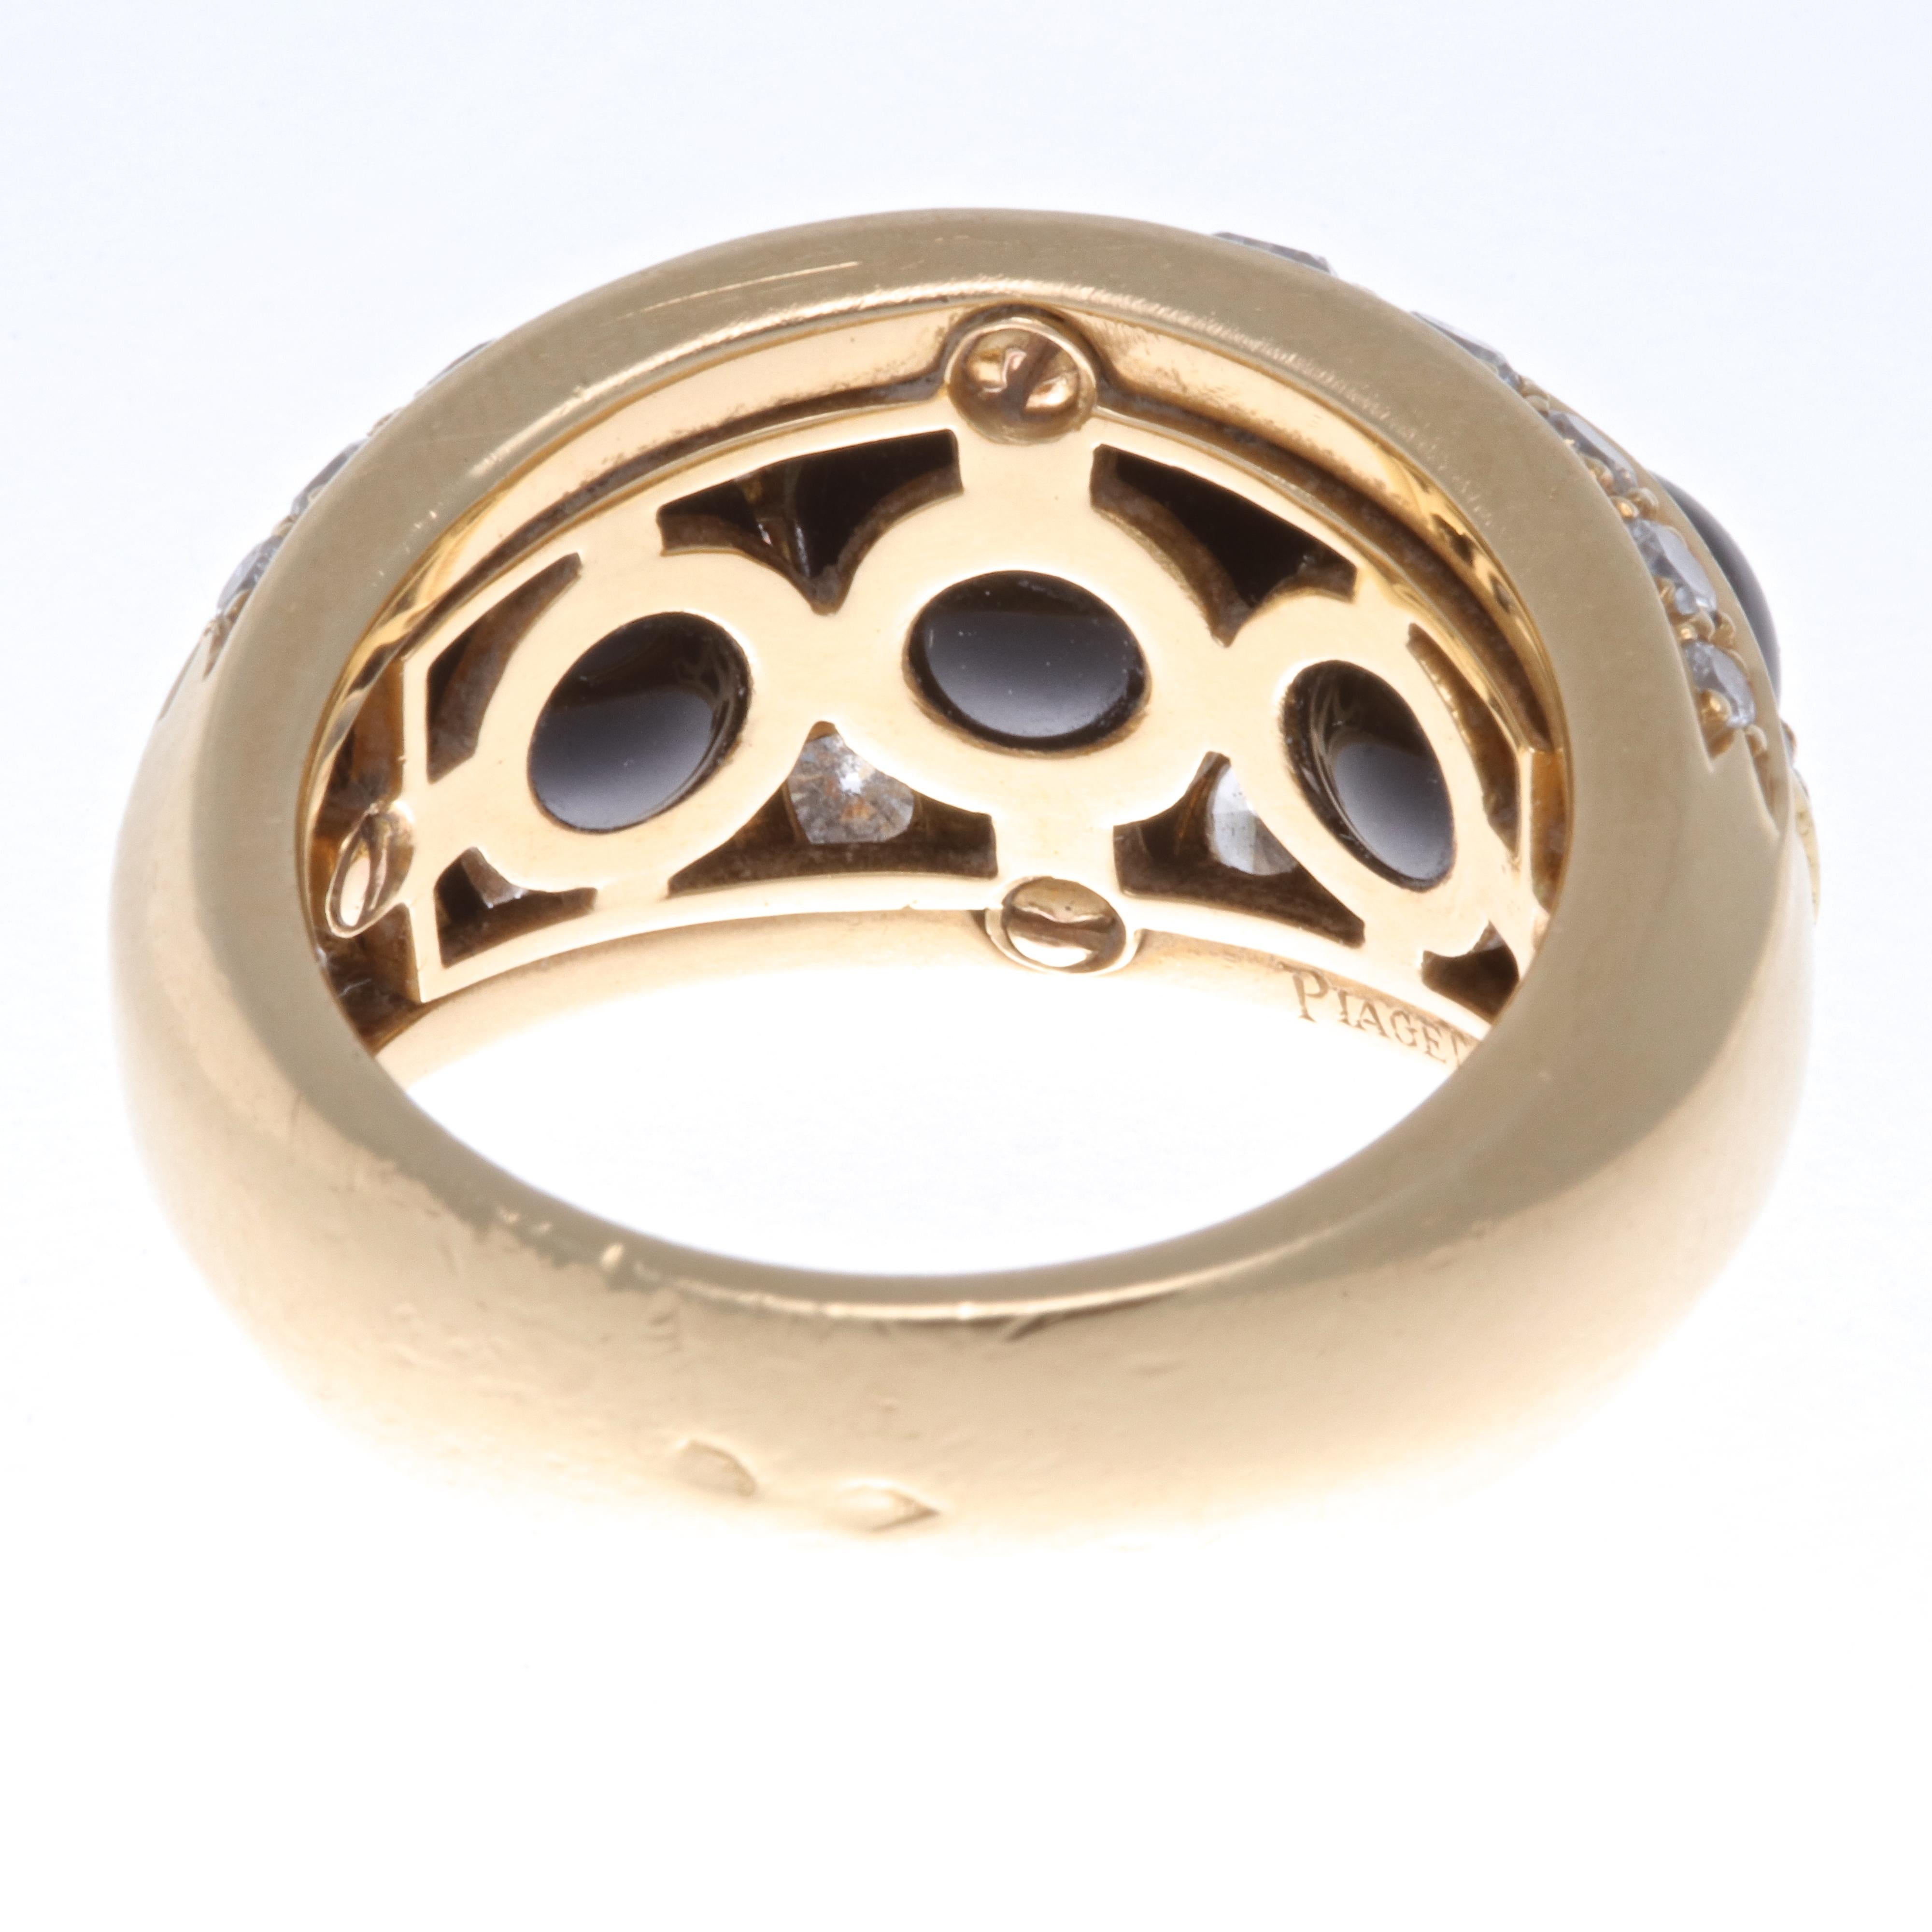 Modern Vintage Piaget 18 Karat Gold and Onyx Ring